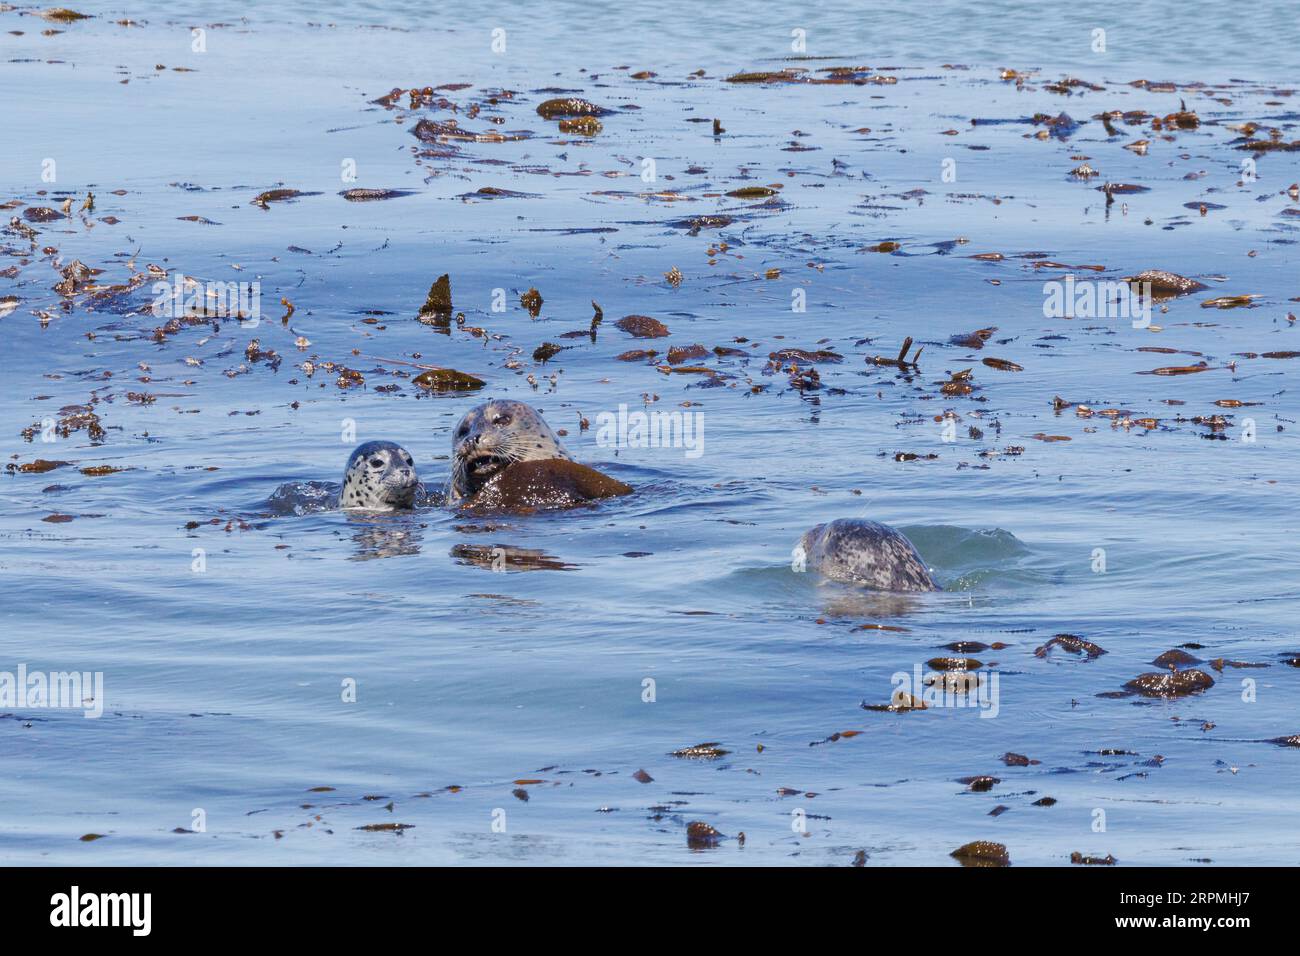 Le lion de mer californien californianus (Zalophus californianus), femelle avec ourson est attaqué par le mâle, USA, Californie Banque D'Images